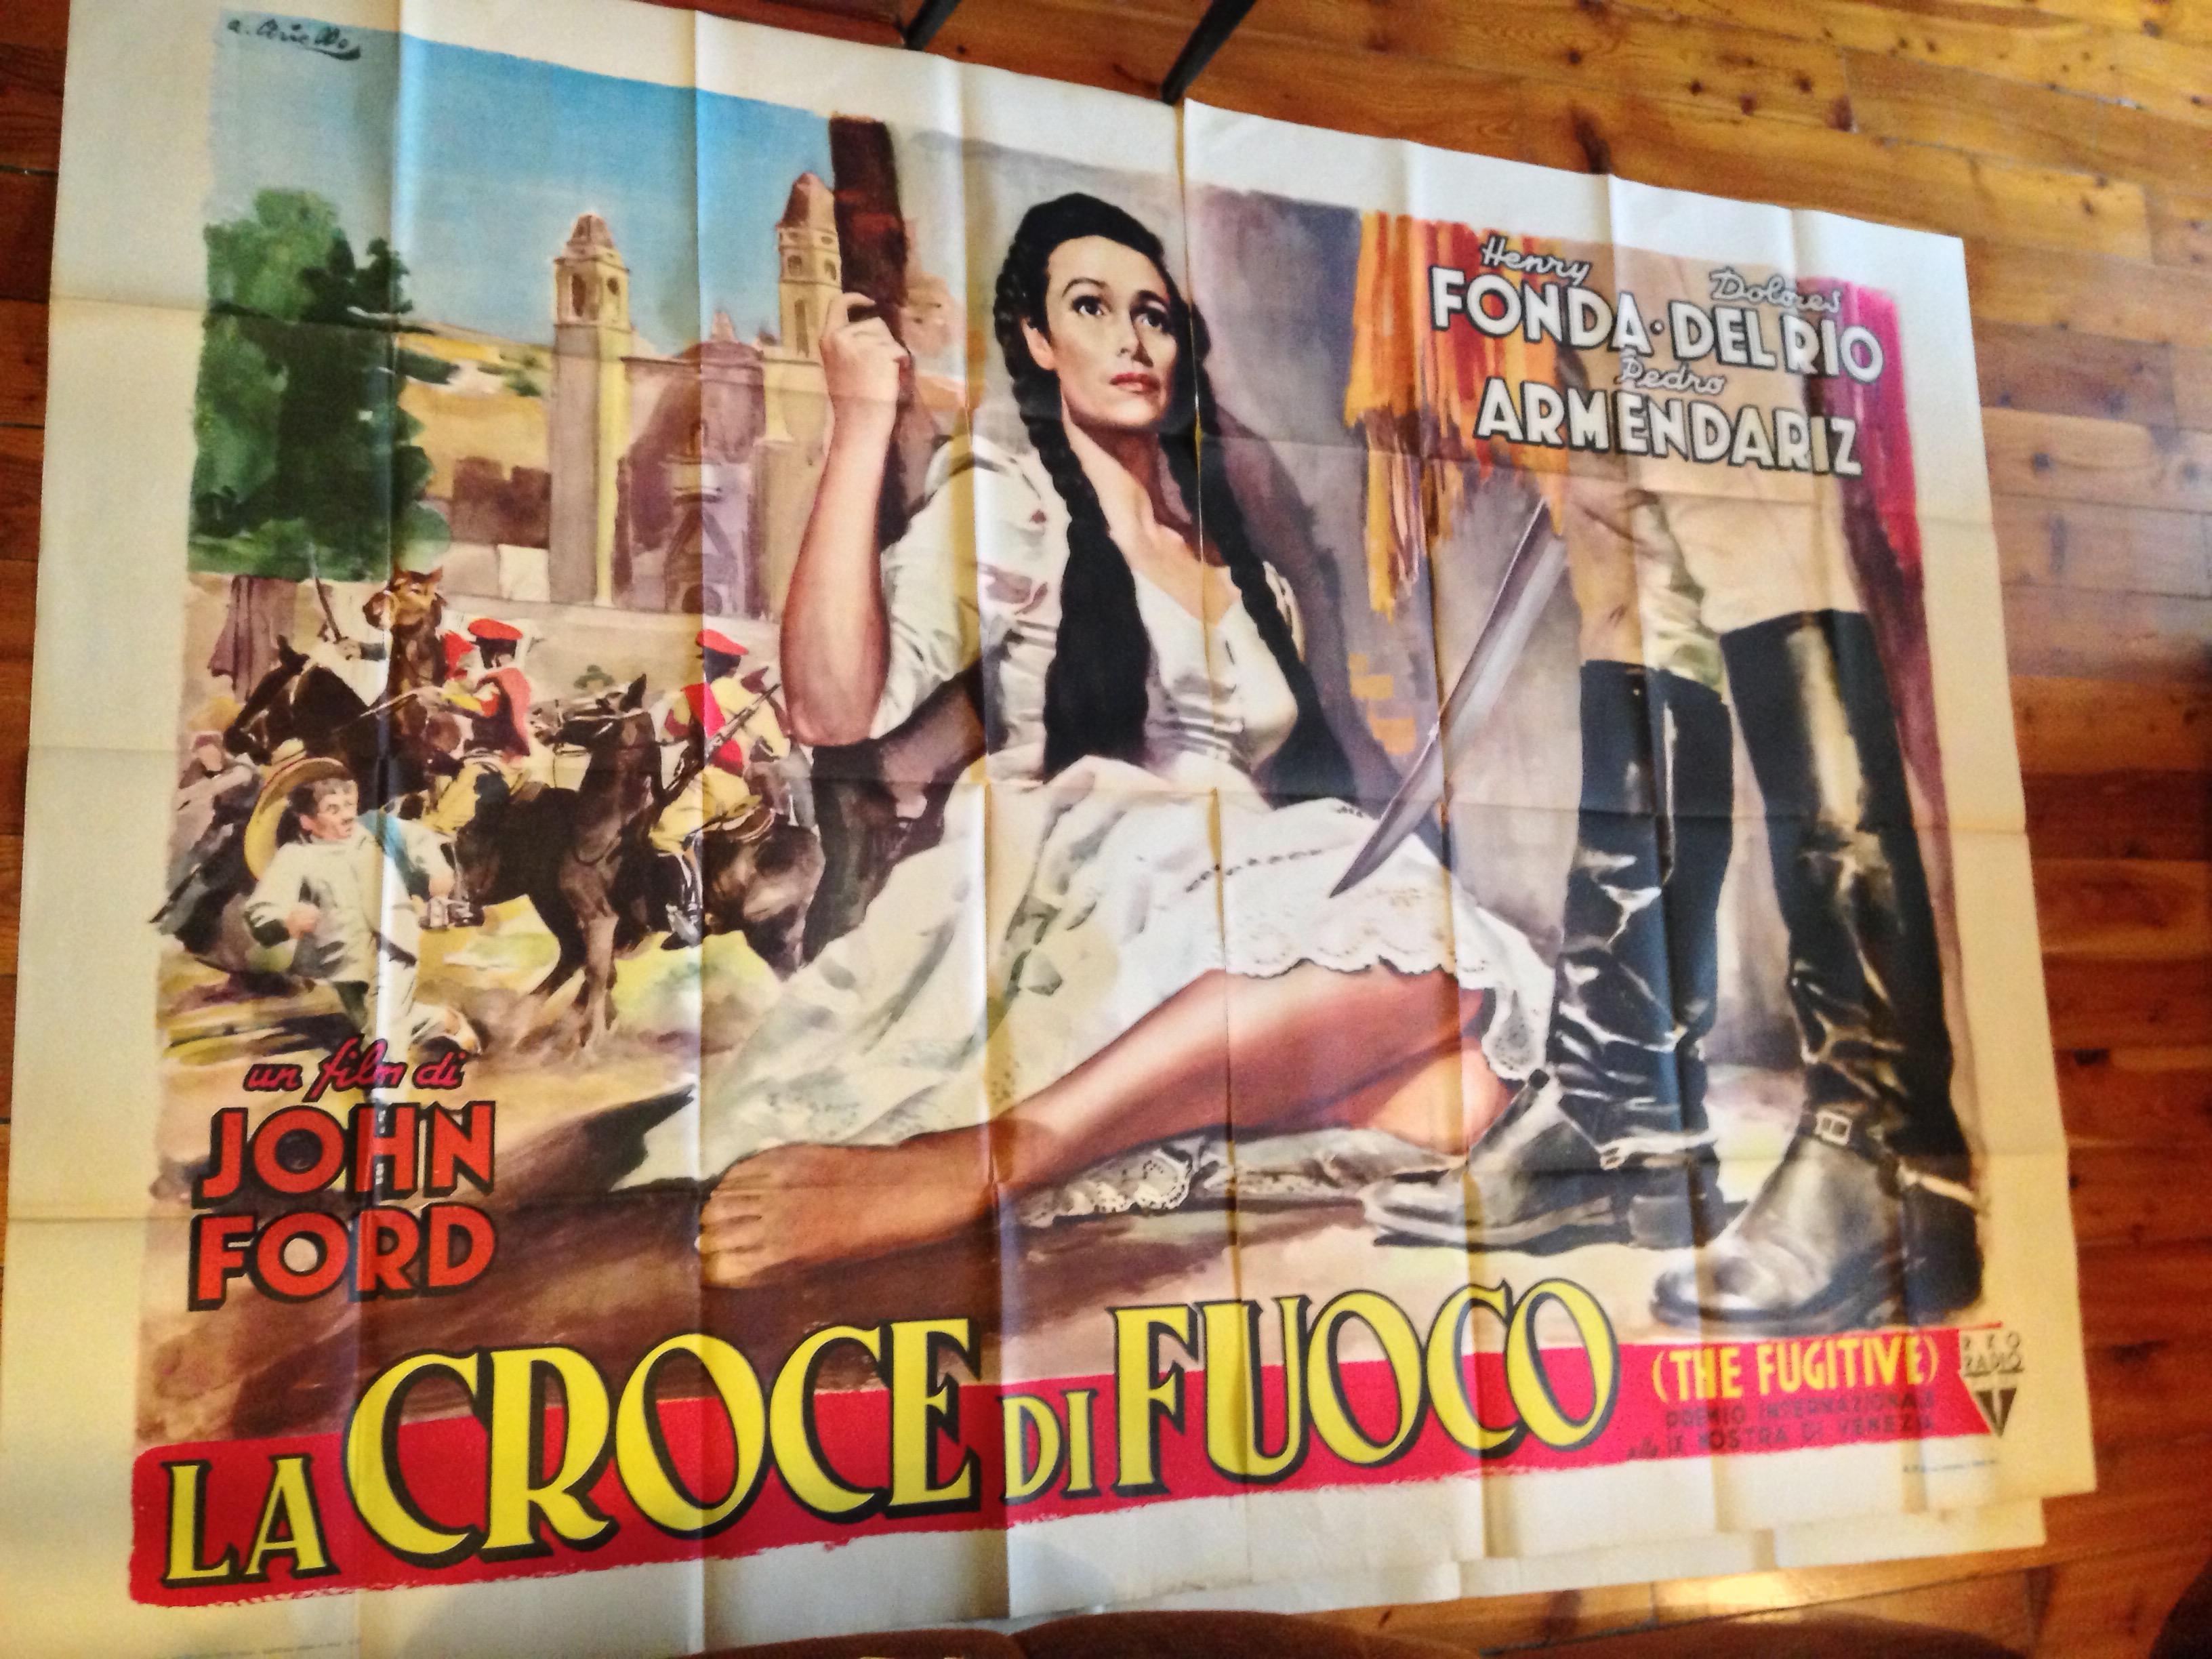 La Croce Fuoco Henry Fonda Ciriello The Fugitive Del Rio manifesto Poster Film In Good Condition For Sale In Udine, IT